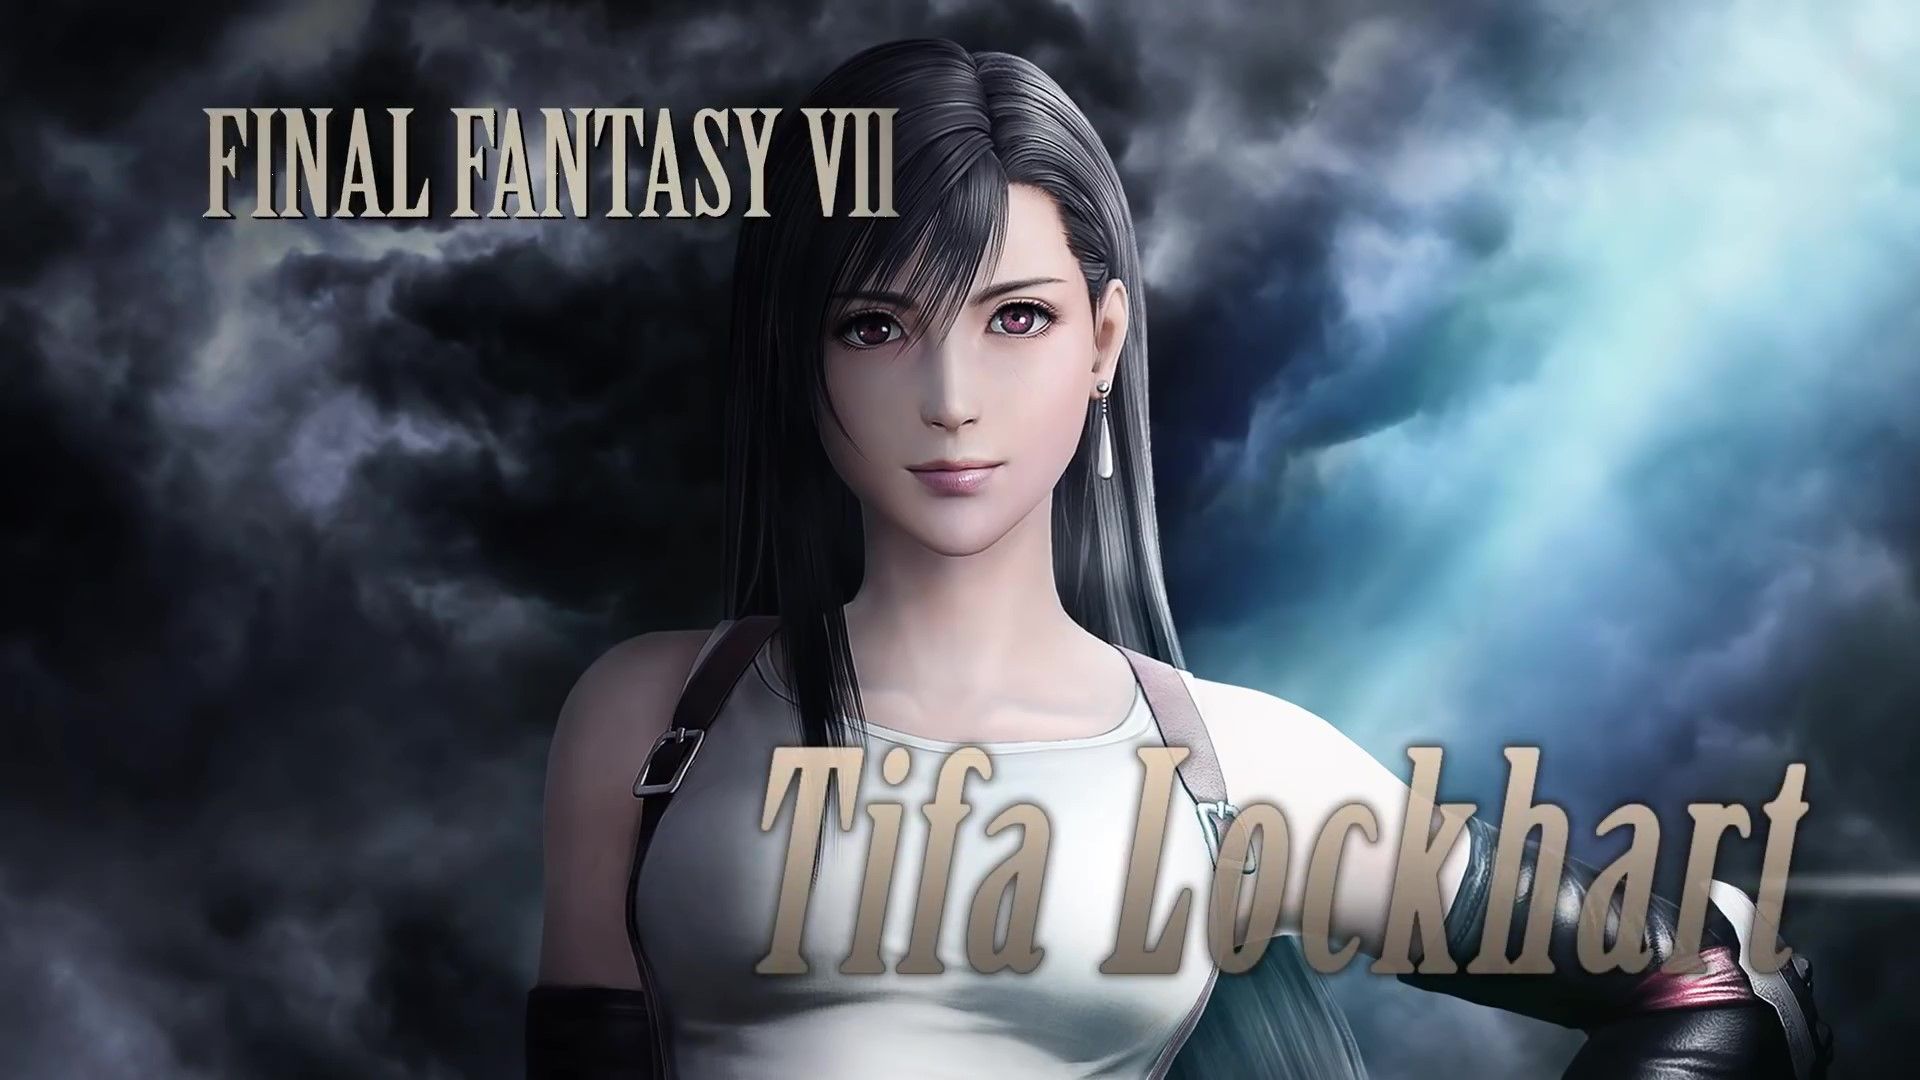 [Dissidia Final Fantasy] Erotic Ex-Costume Tank Top Erotic Tifa! 18